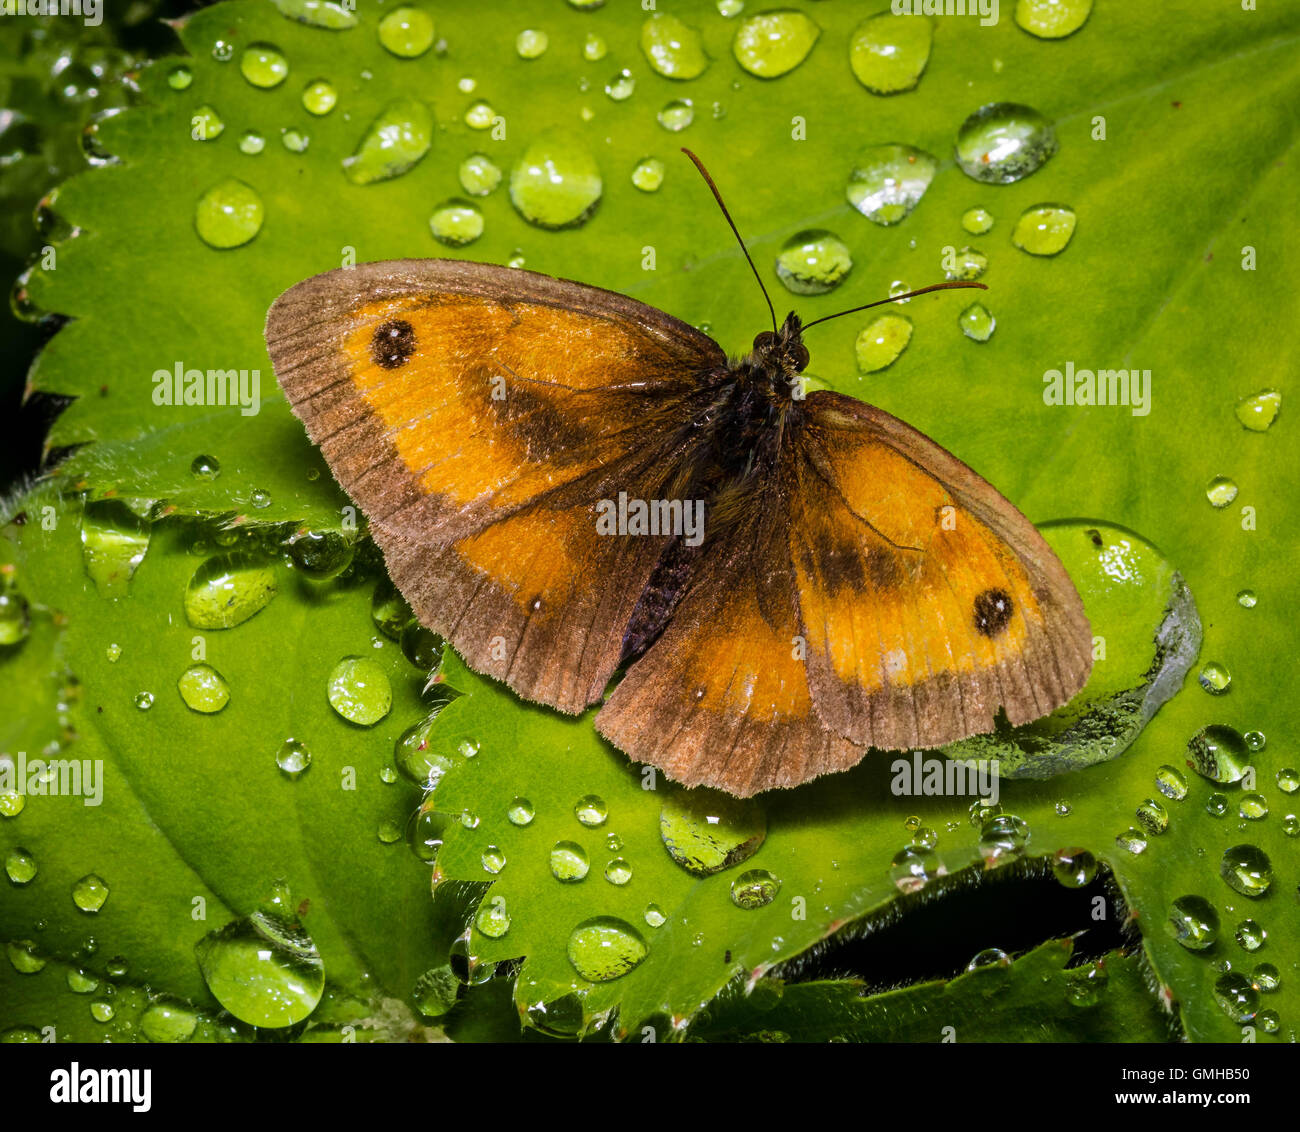 Gatekeeper Butterfly in the Rain. Stock Photo